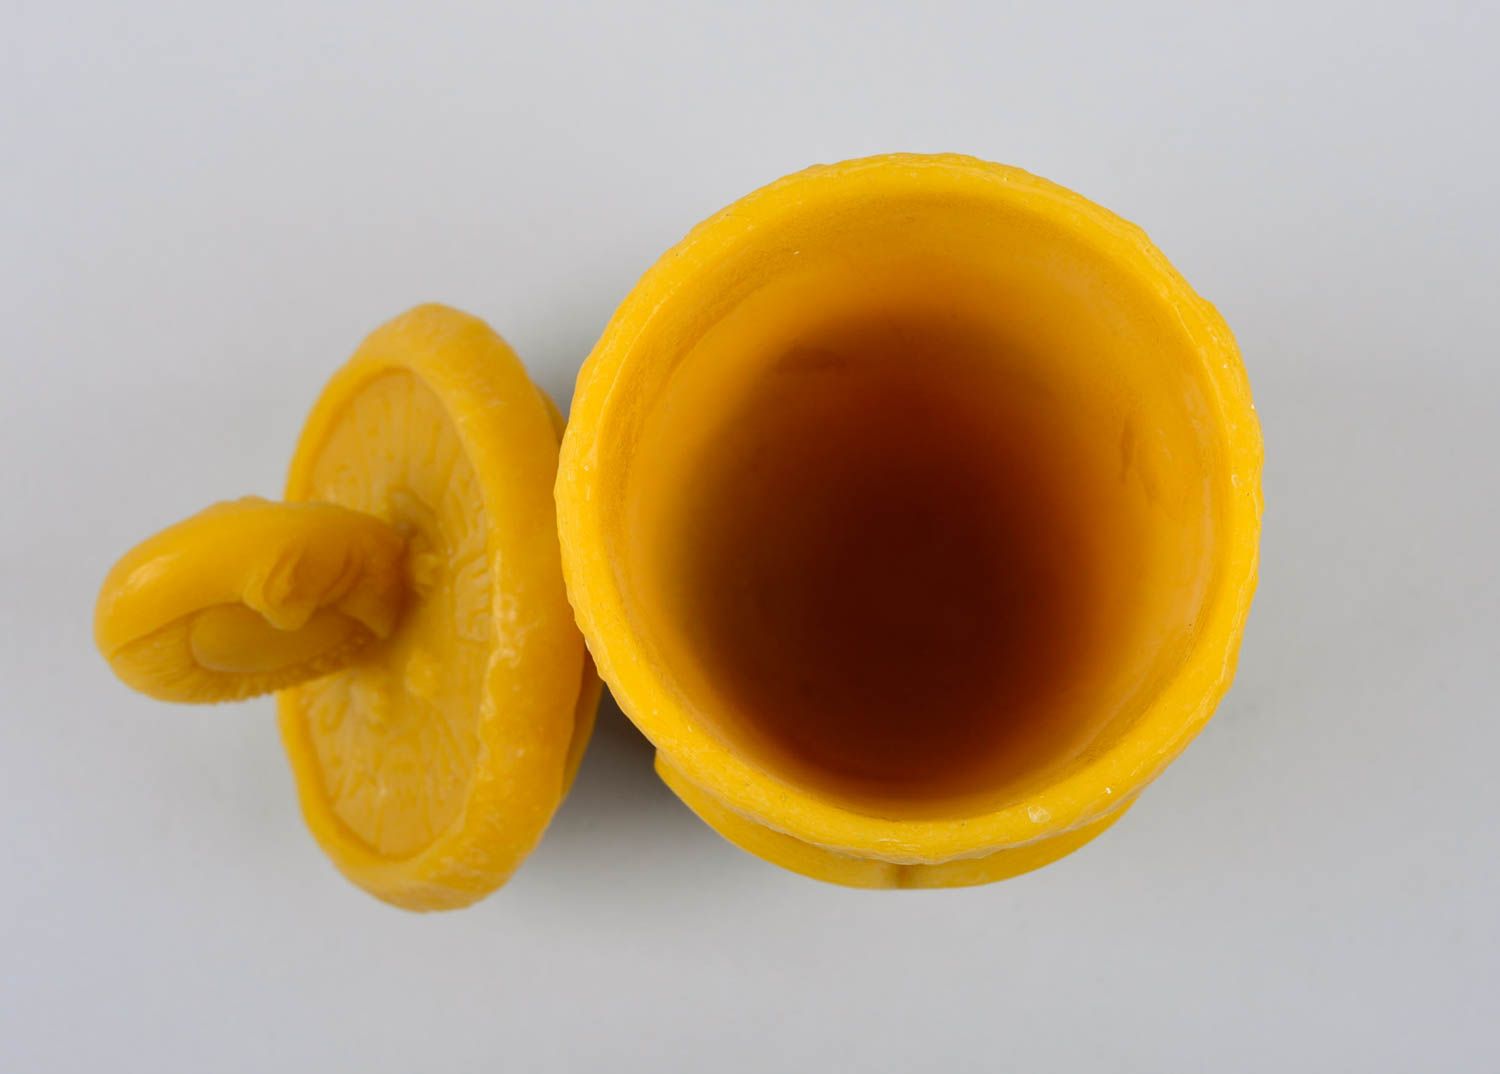 Красивый стакан ручной работы столовая посуда Овен экологическая посуда из воска фото 5